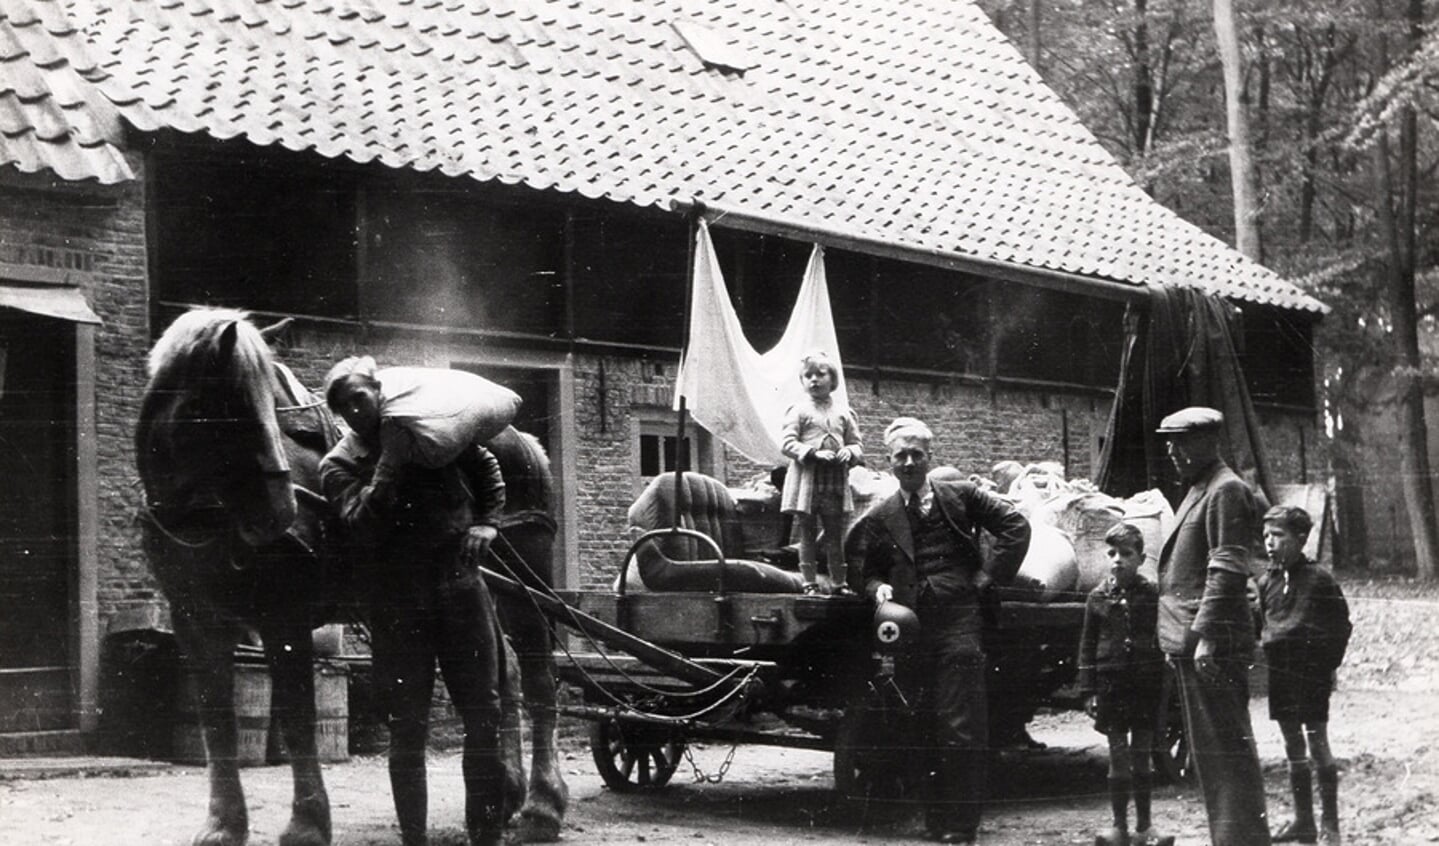 Eind september 1944 geven de Duitse autoriteiten het bevel de stad Arnhem te ontruimen. Ongeveer 600 Arnhemmers kiezen het Nederlands Openluchtmuseum als tijdelijke verblijfplaats. Een deel van hen woont tot eind december 1944 in de gebouwen op het museumterrein.